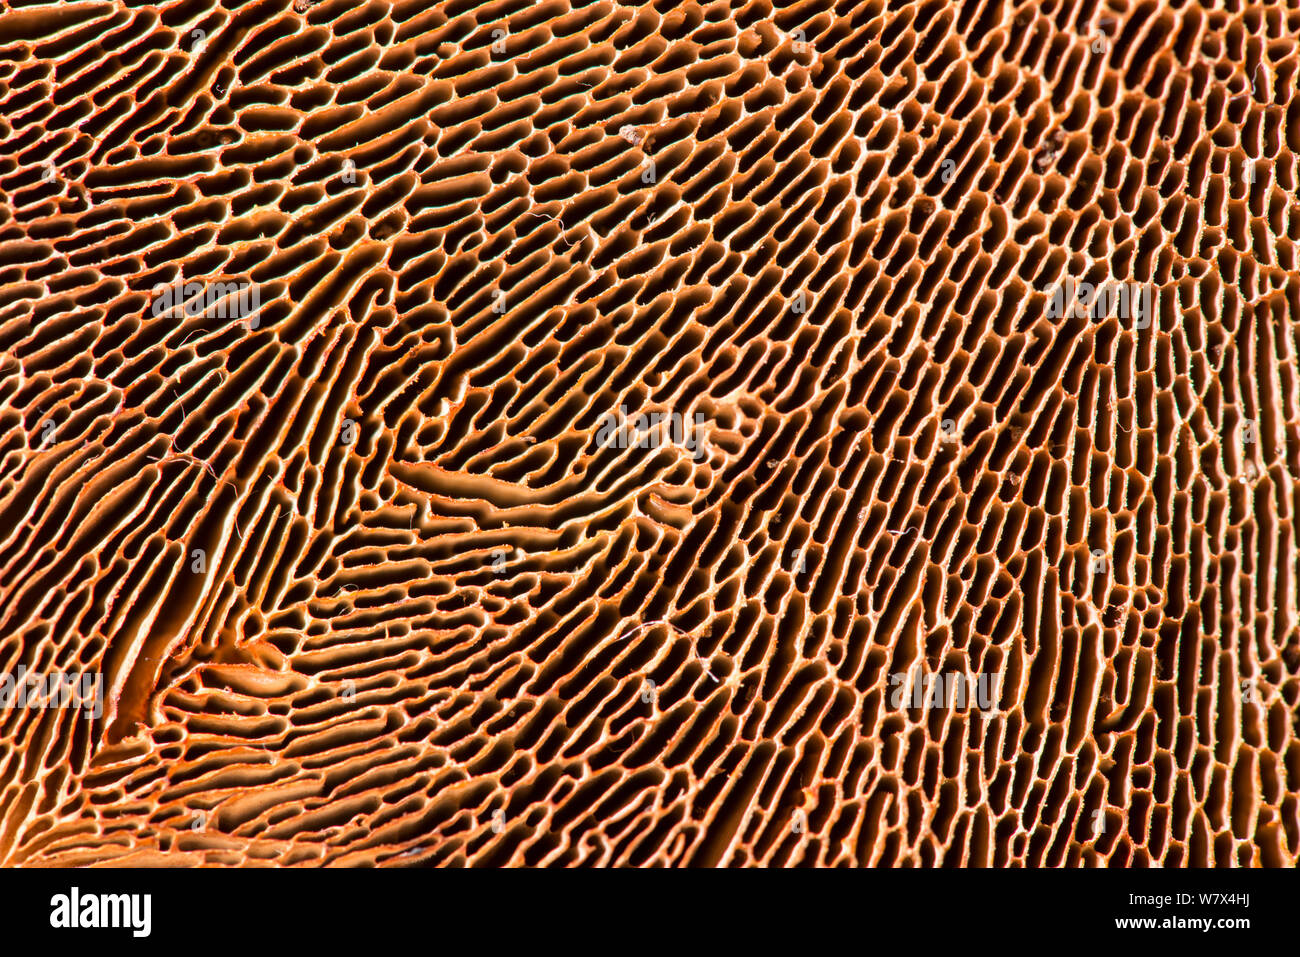 Birke mazegill Pilz (Lenzites Betulina). Wächst auf Silver Birch. In der Nähe der Unterseite zeigt Muster der Kiemen. Stockfoto